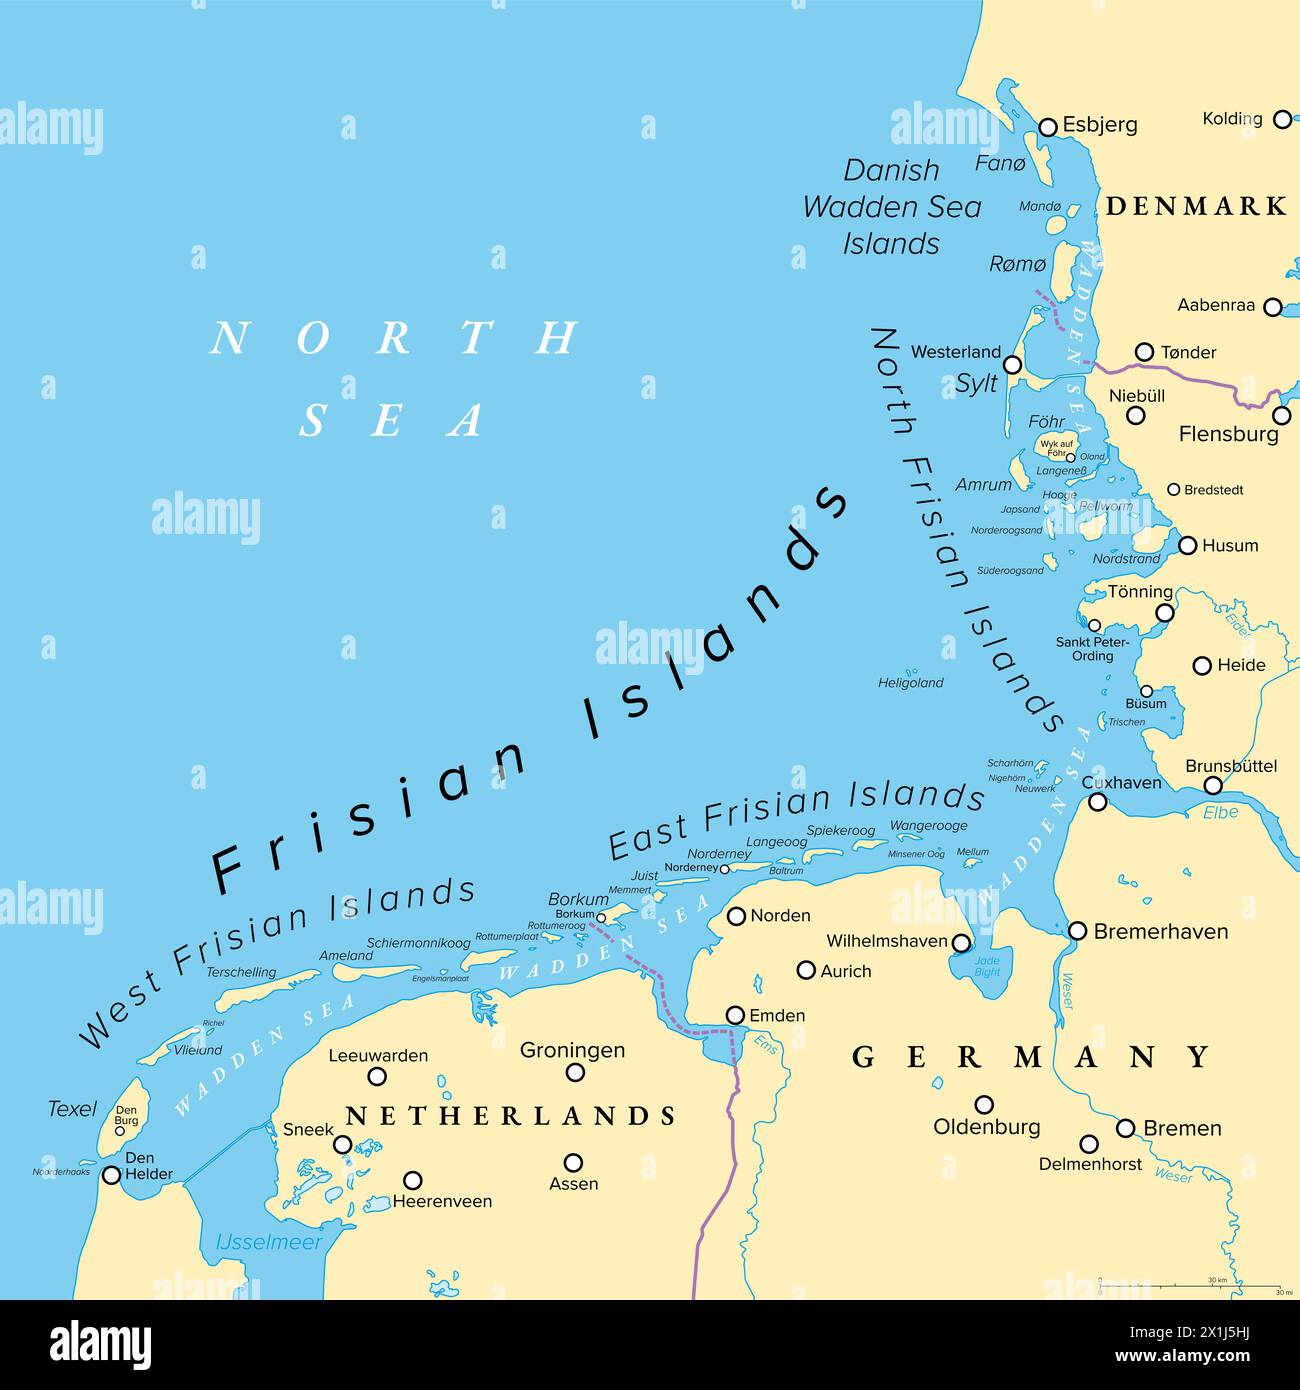 Isole Frisone, mappa politica. Isole del Mare di Wadden, arcipelago nel Mare del Nord in Europa, che si estende per vom Paesi Bassi attraverso la Germania fino alla Danimarca. Foto Stock